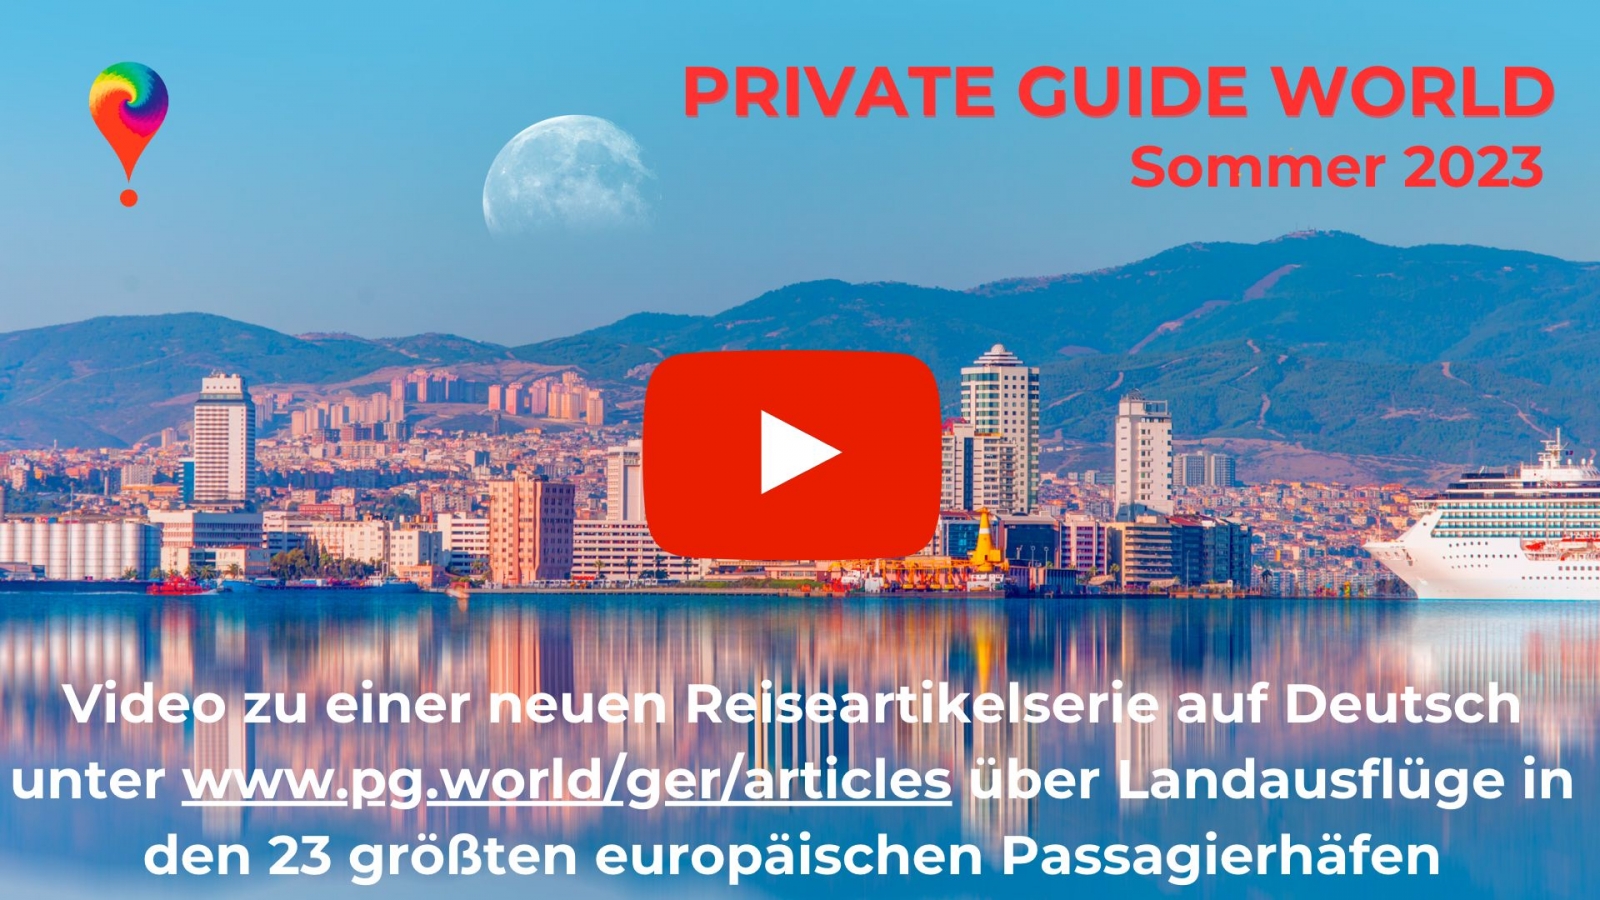 Video auf unserem YouTube-Kanal @PrivateGuideWorld :: Landausflüge in 23 Passagierhäfen Europas unter www.pg.world